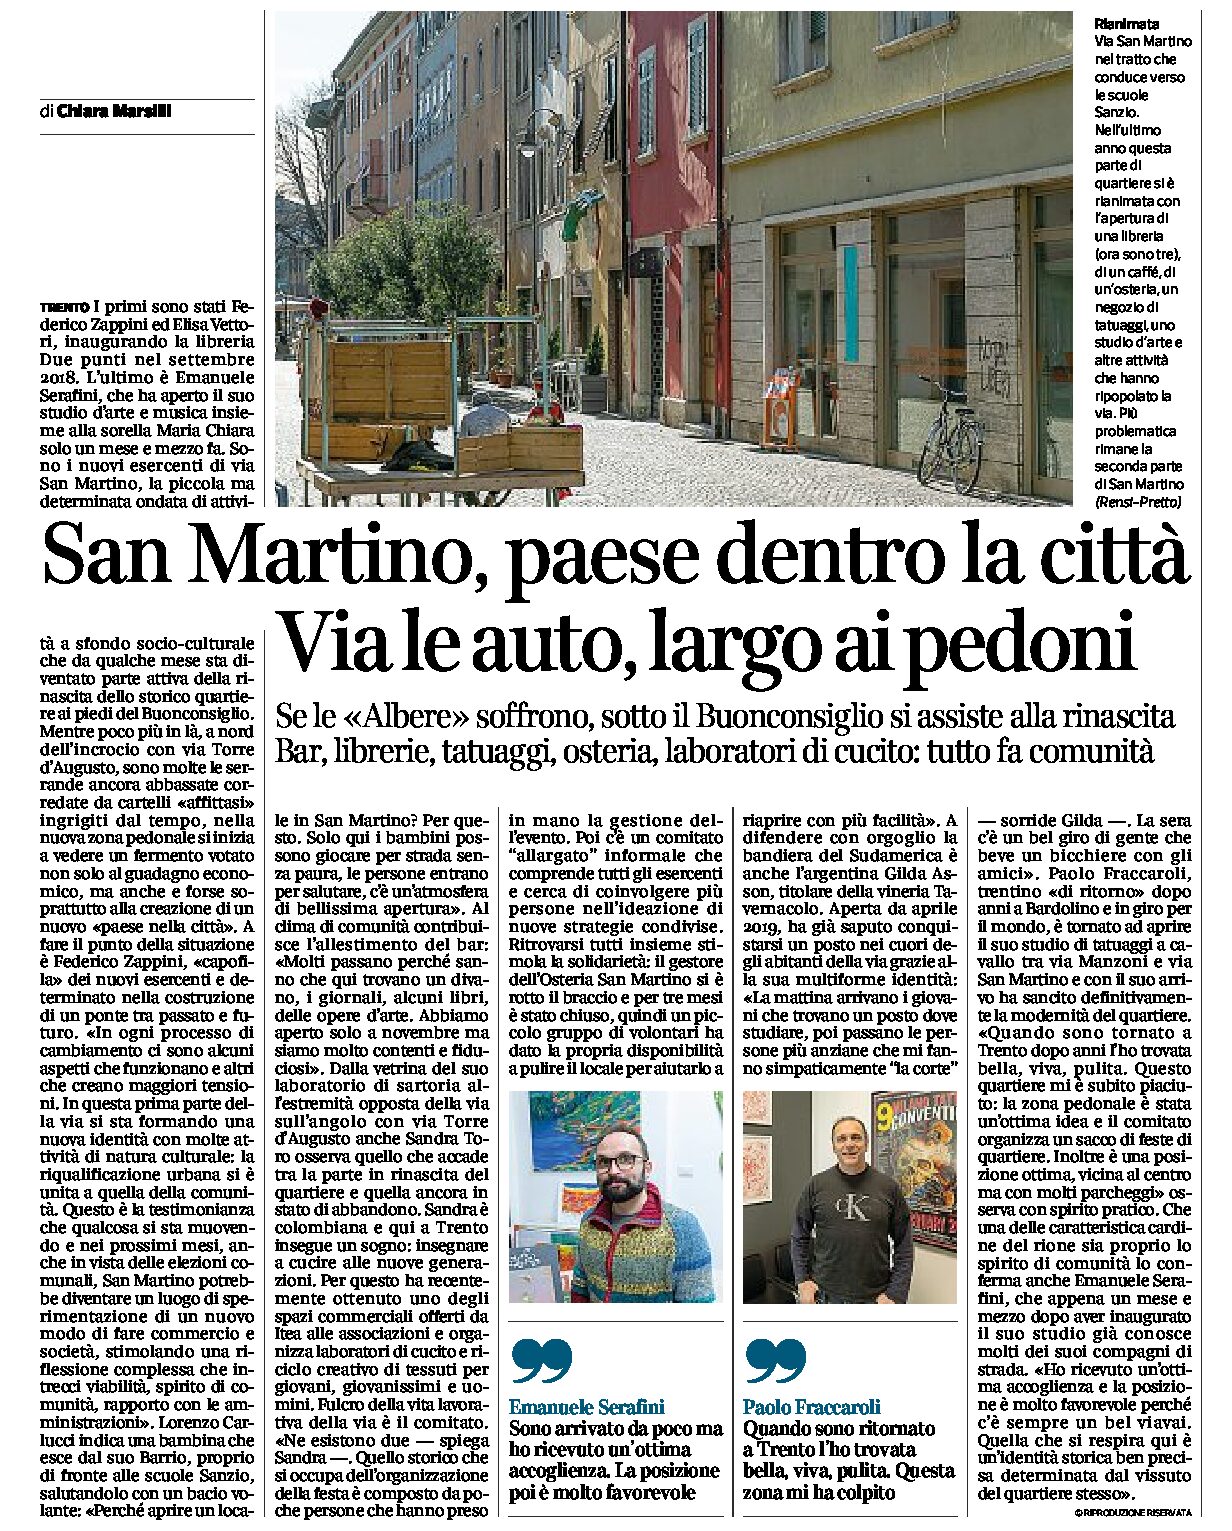 Trento, San Martino: il paese dentro la città, via le auto largo ai pedoni